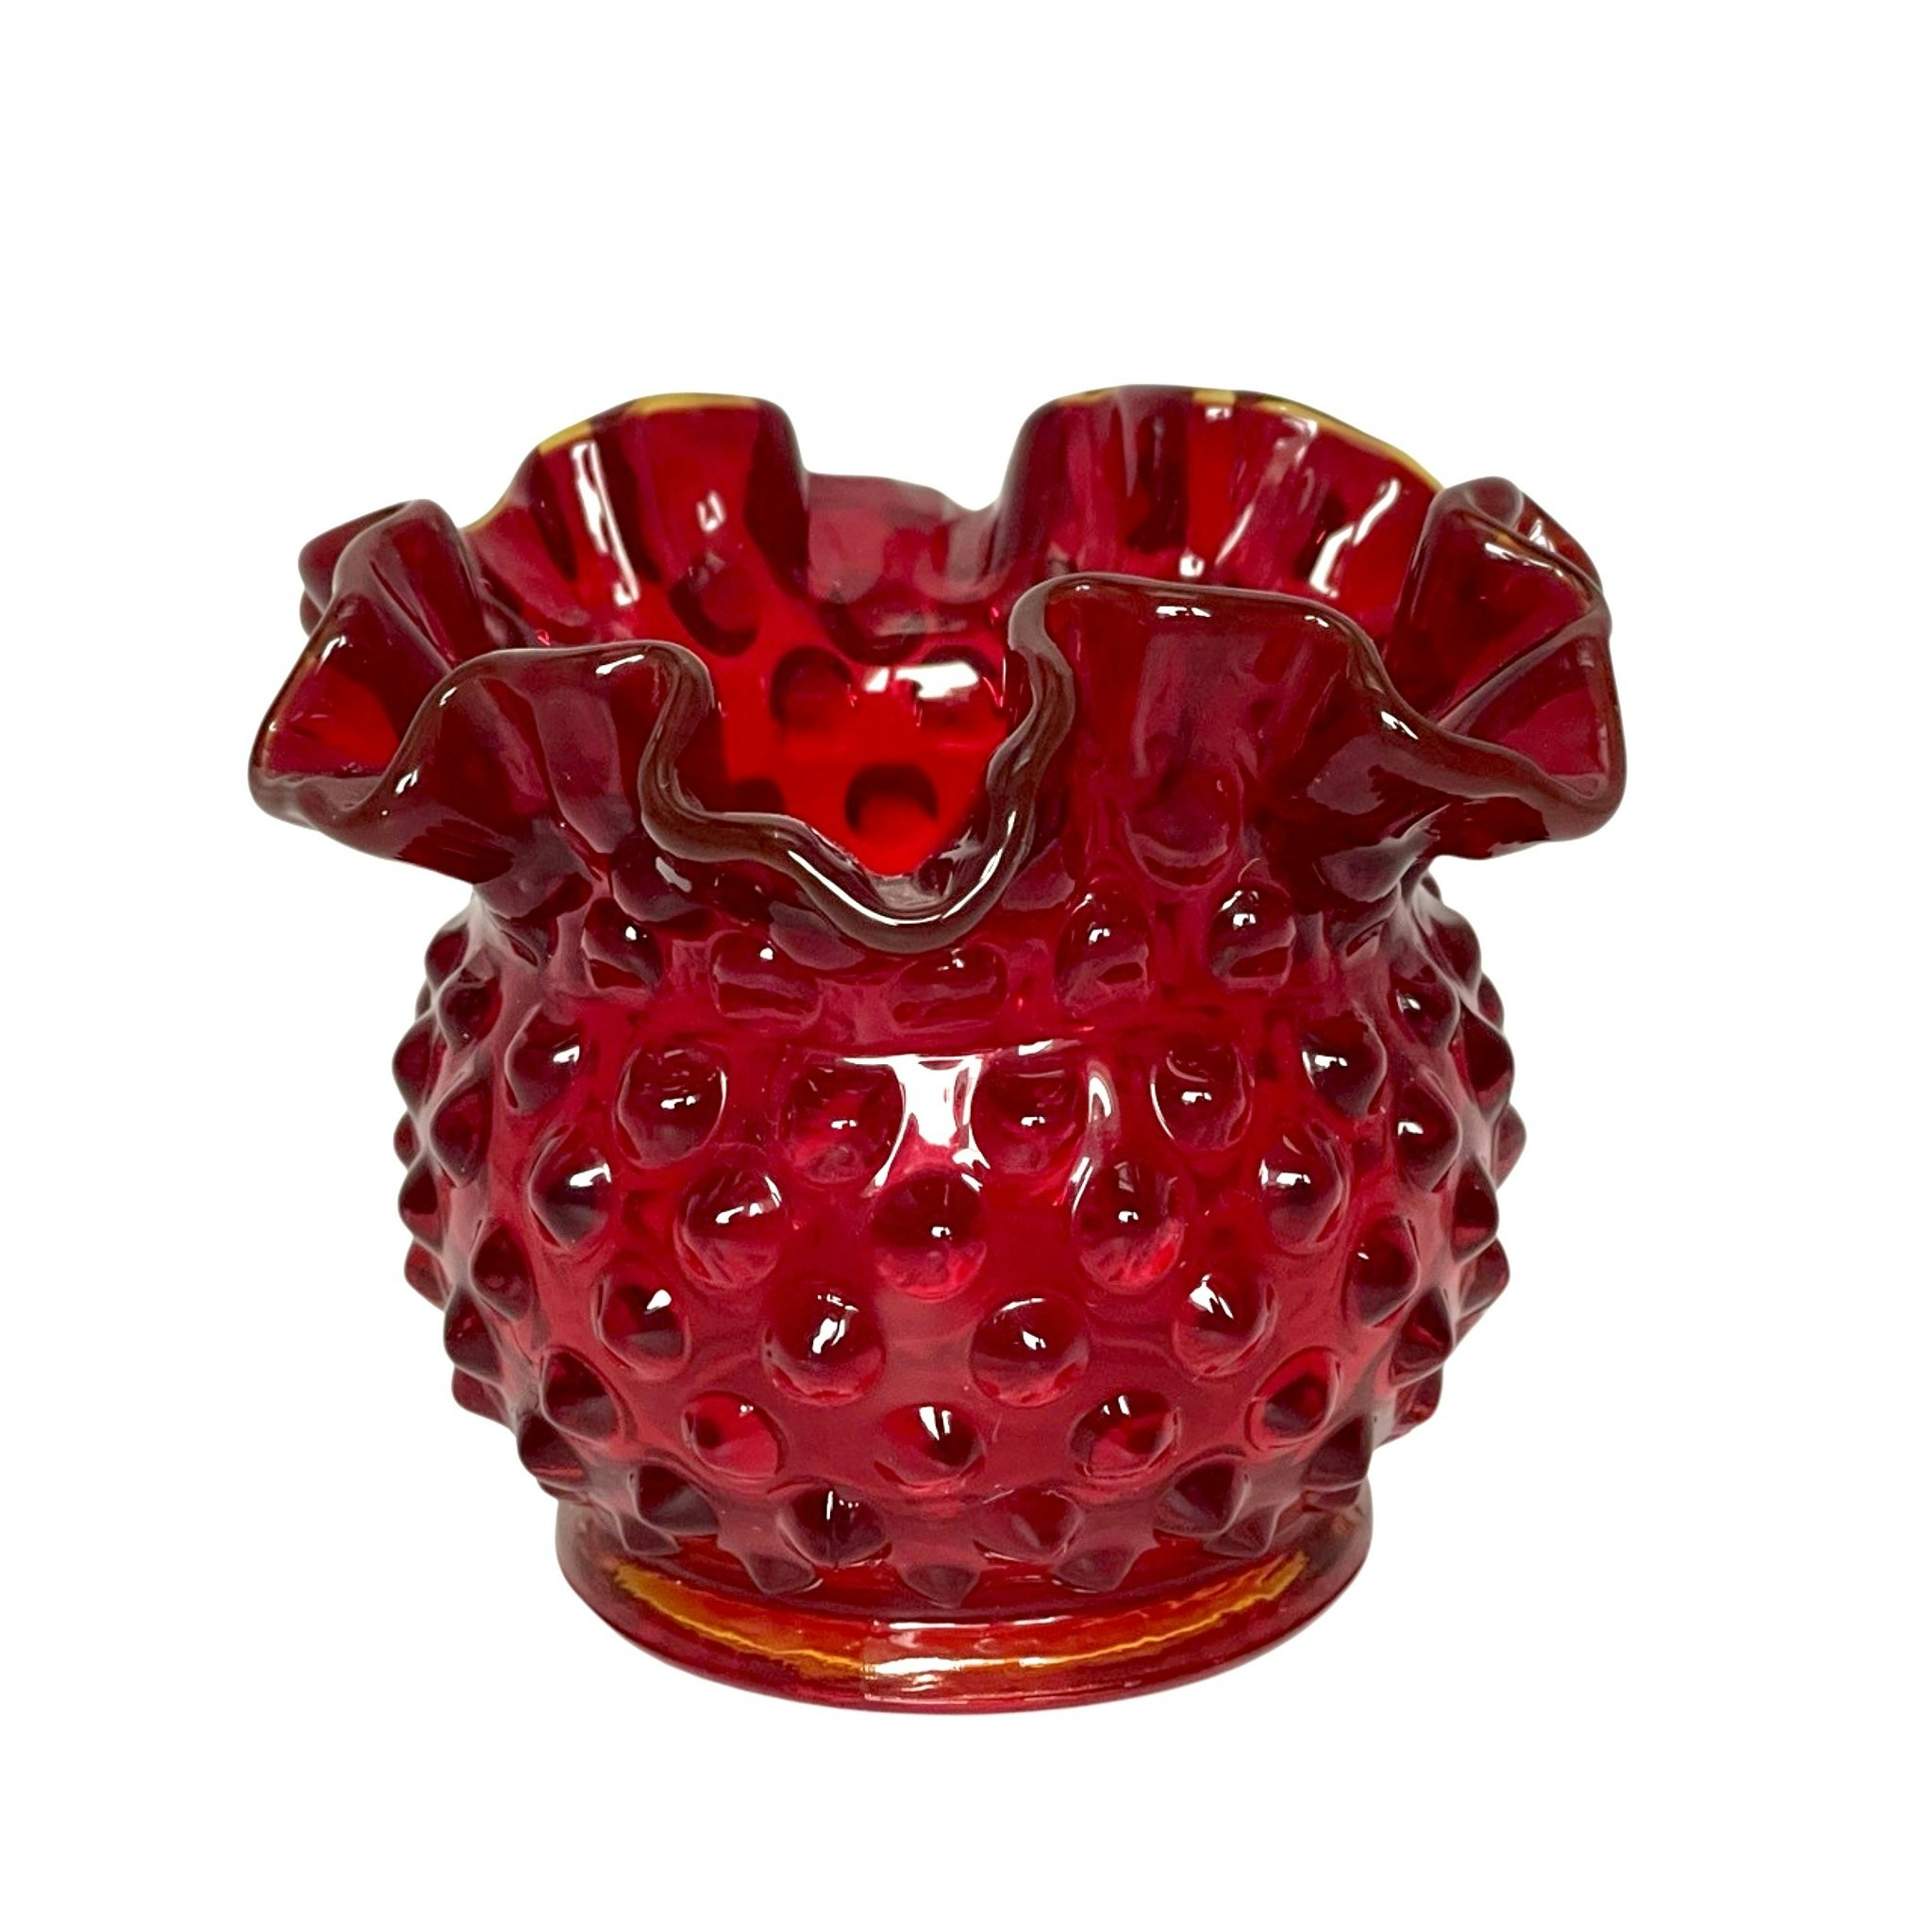 Vintage Fenton glass ruby red vase